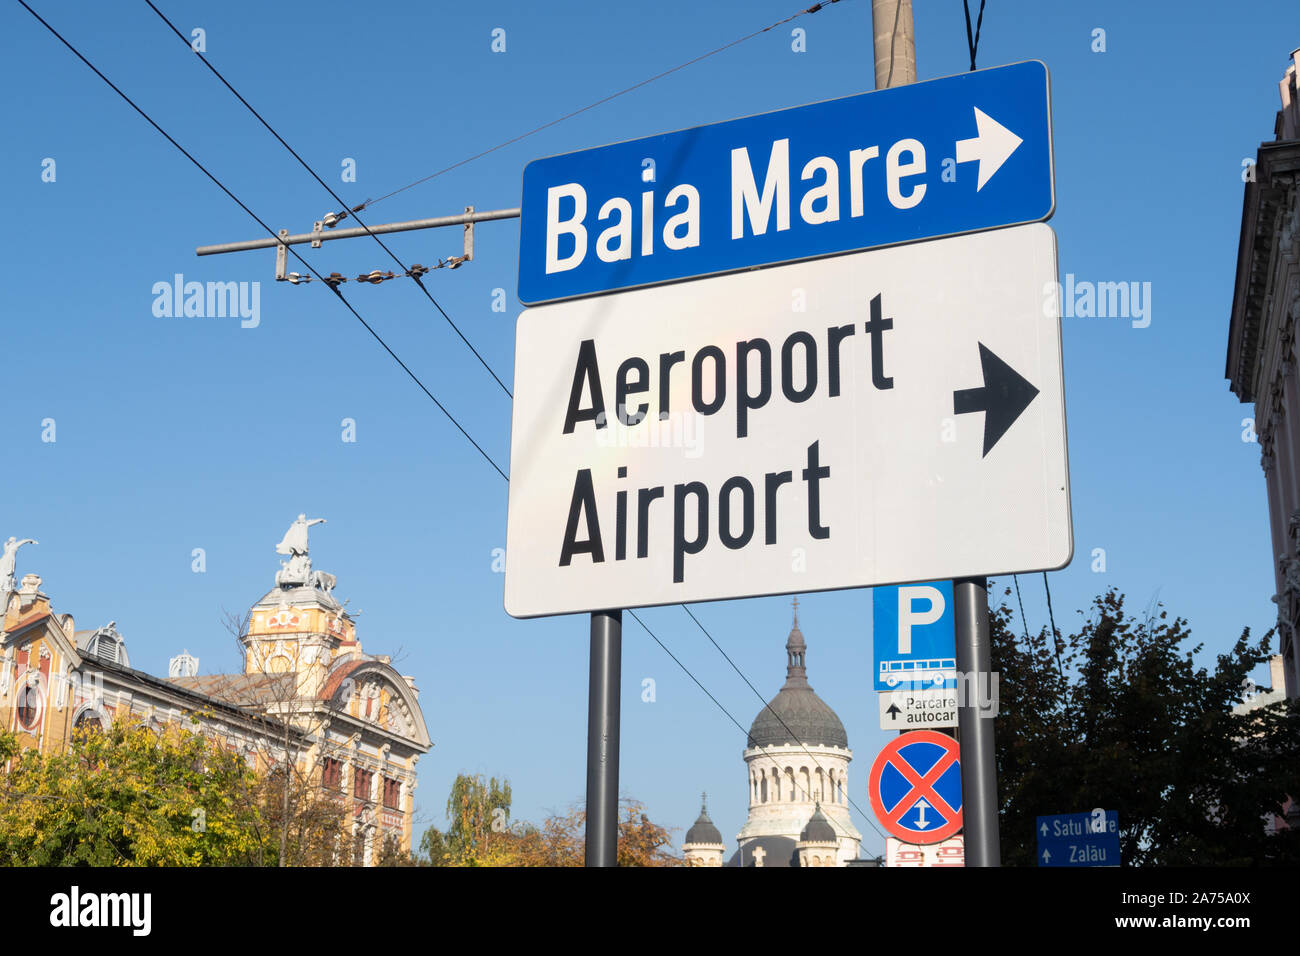 Cluj Napoca, Romania - 24 Oct, 2019: Aiport and Baia Mare road Sign in Cluj Napoca, Romania Stock Photo